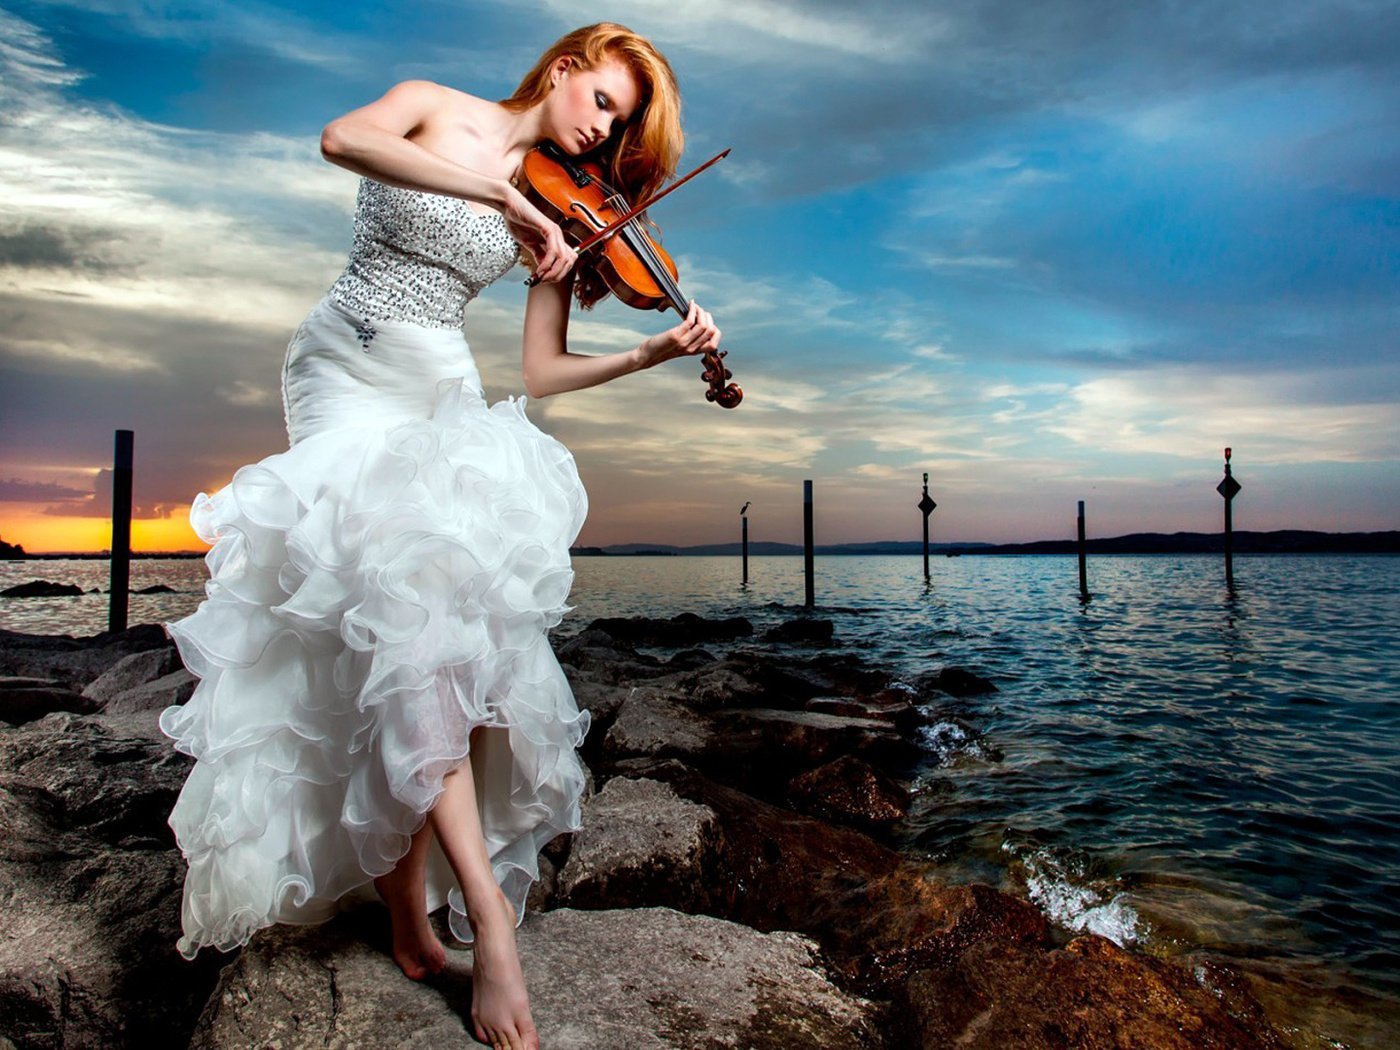 Найти красивейшую музыку. Девушка скрипачка. Фотосессия со скрипкой. Девушка в платье со скрипкой. Девушка скрипка море.